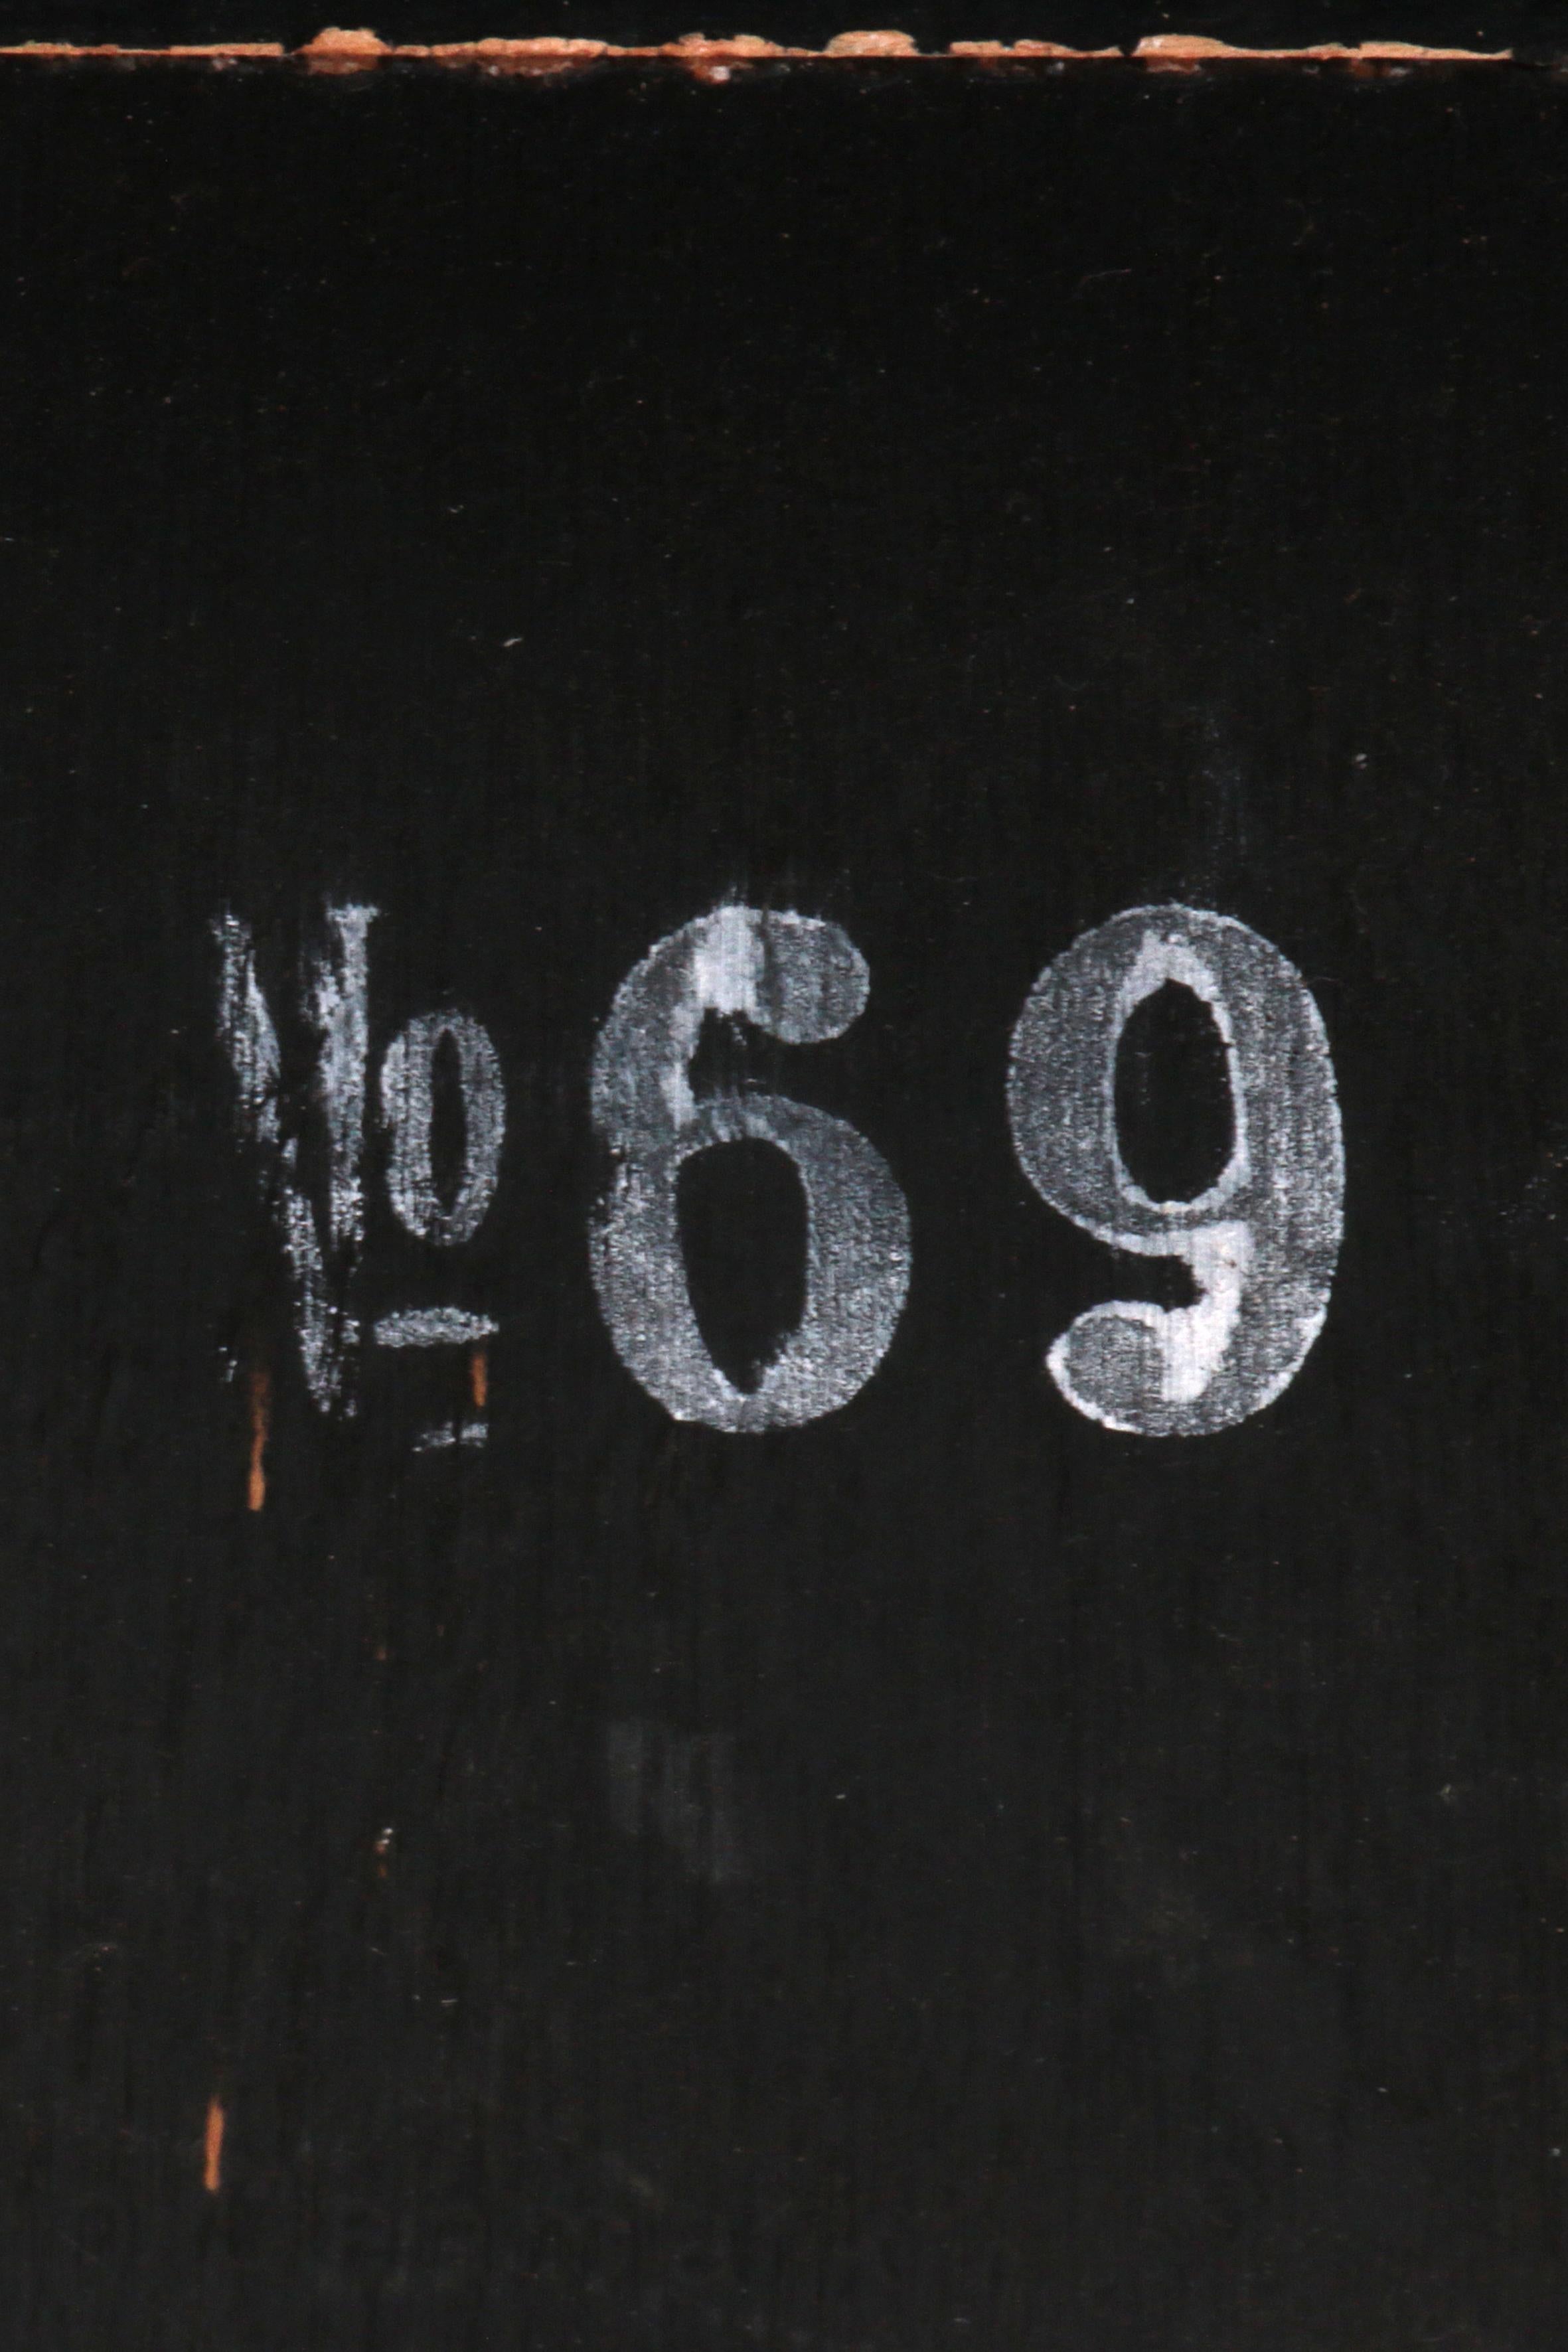 Jacob Hermann Dark Wood Dining Room Chairs Randers Mobelfabriek, 1965 For Sale 8